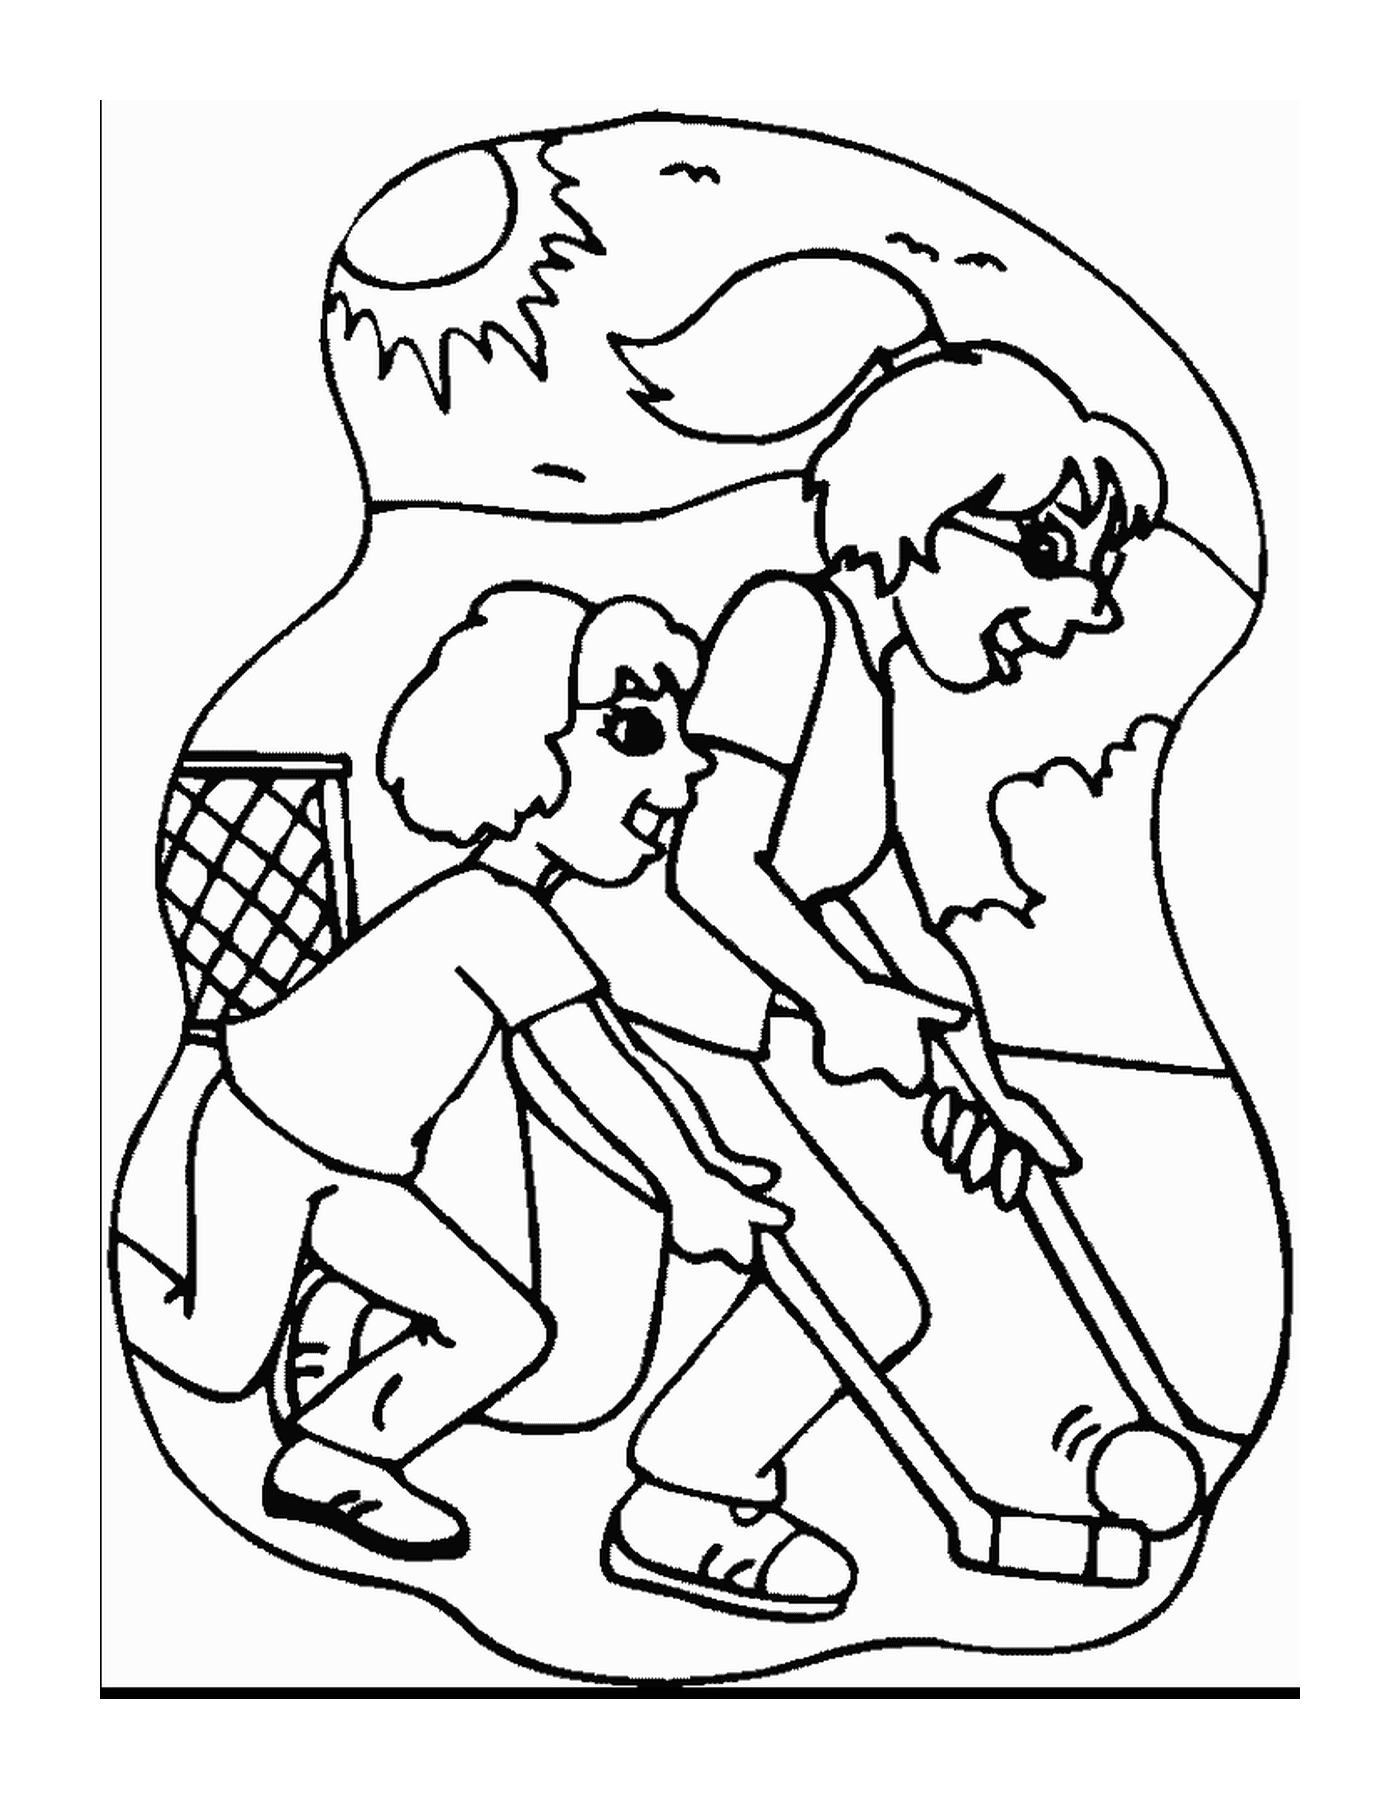  Две девушки играют в хоккей на траве 